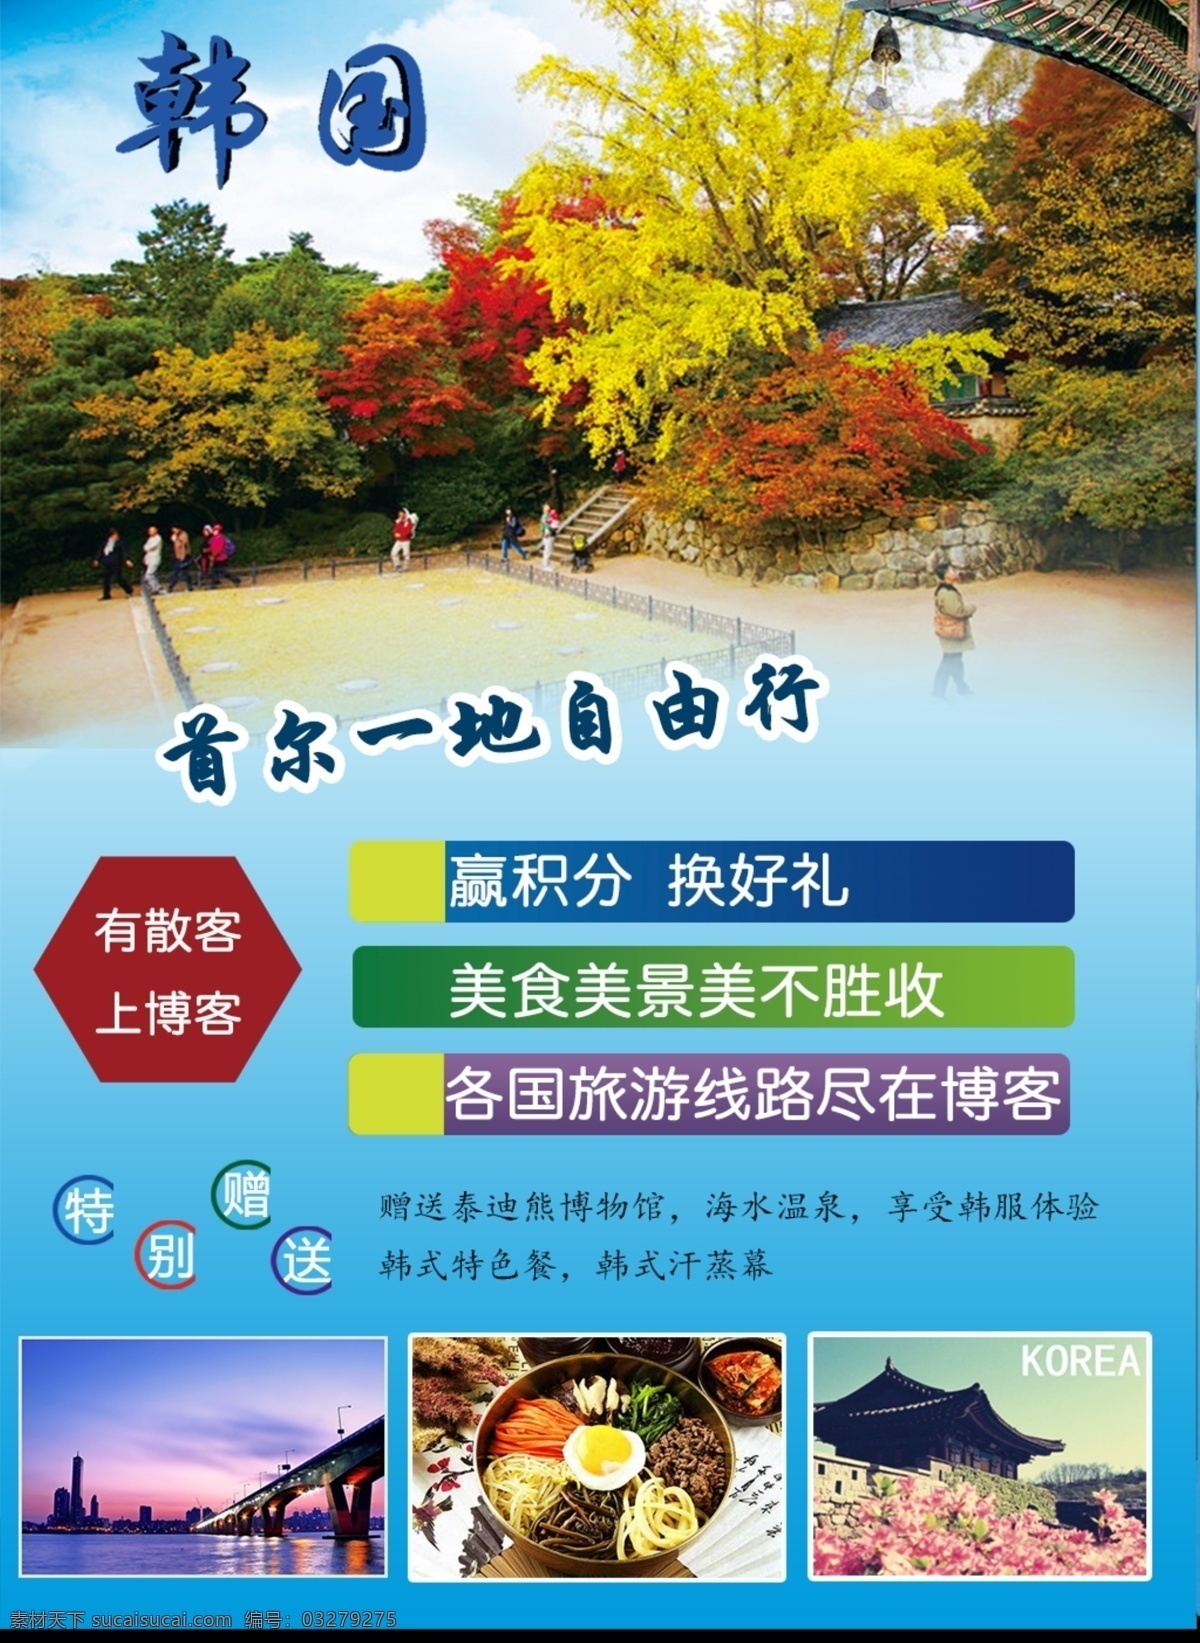 韩国宣传单 韩国旅游海报 宣传单 韩国行程 青色 天蓝色